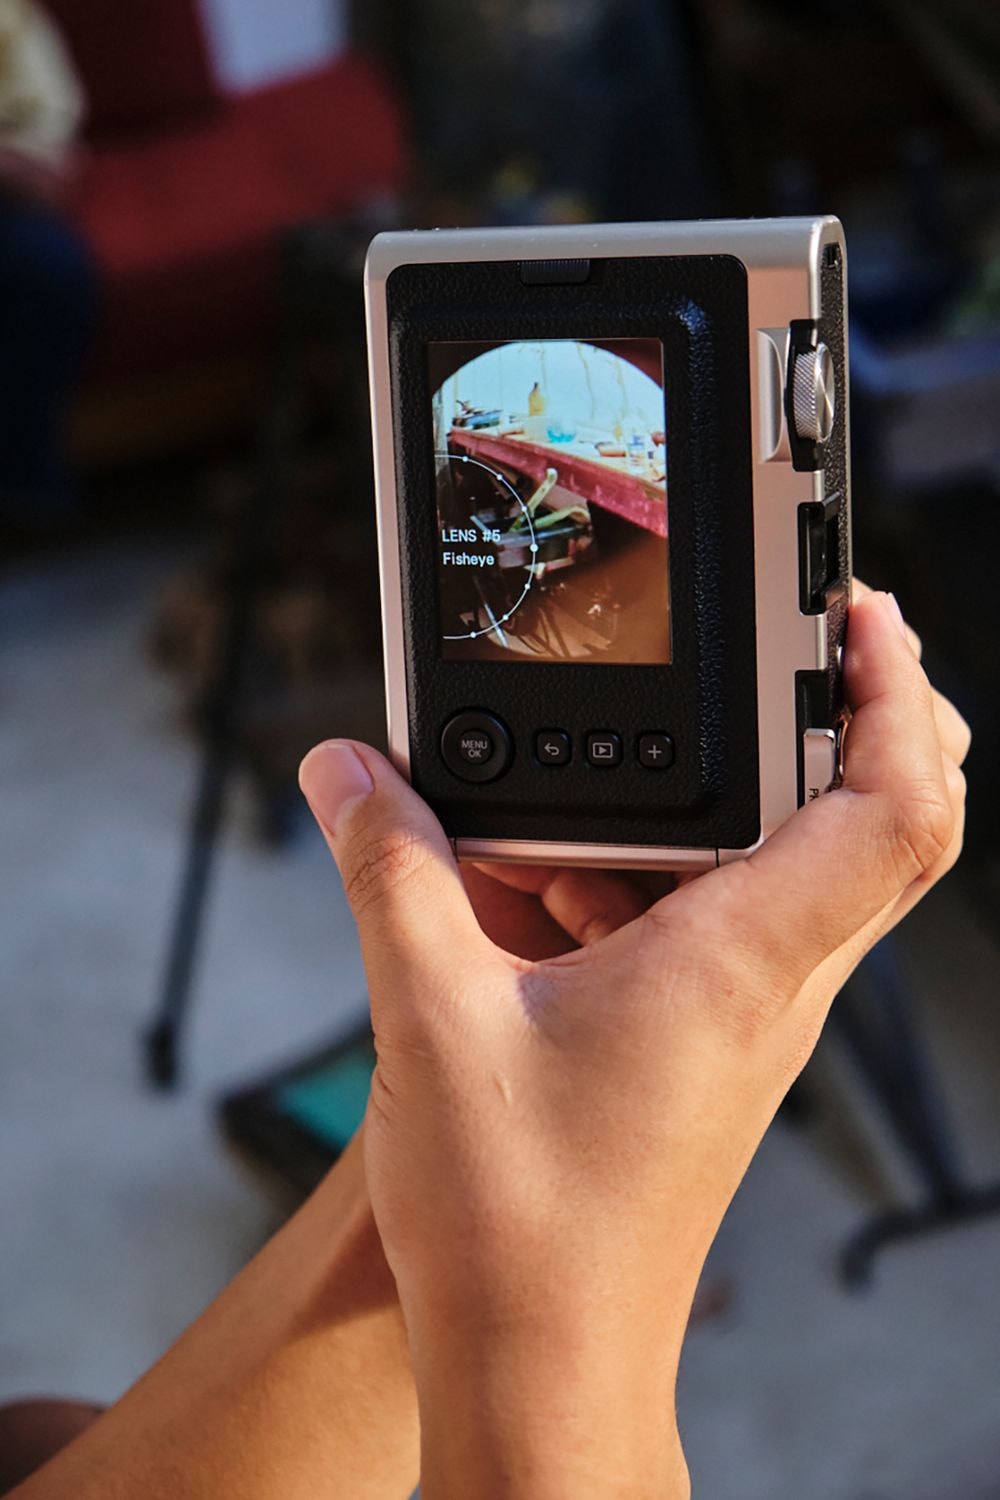 100通りの撮影エフェクトが楽しめる最新インスタントカメラ instax mini Evoが誕生 FUJIFILM'S NEW INSTAX MINI EVO CAMERA COMES WITH 10 LENS MODES